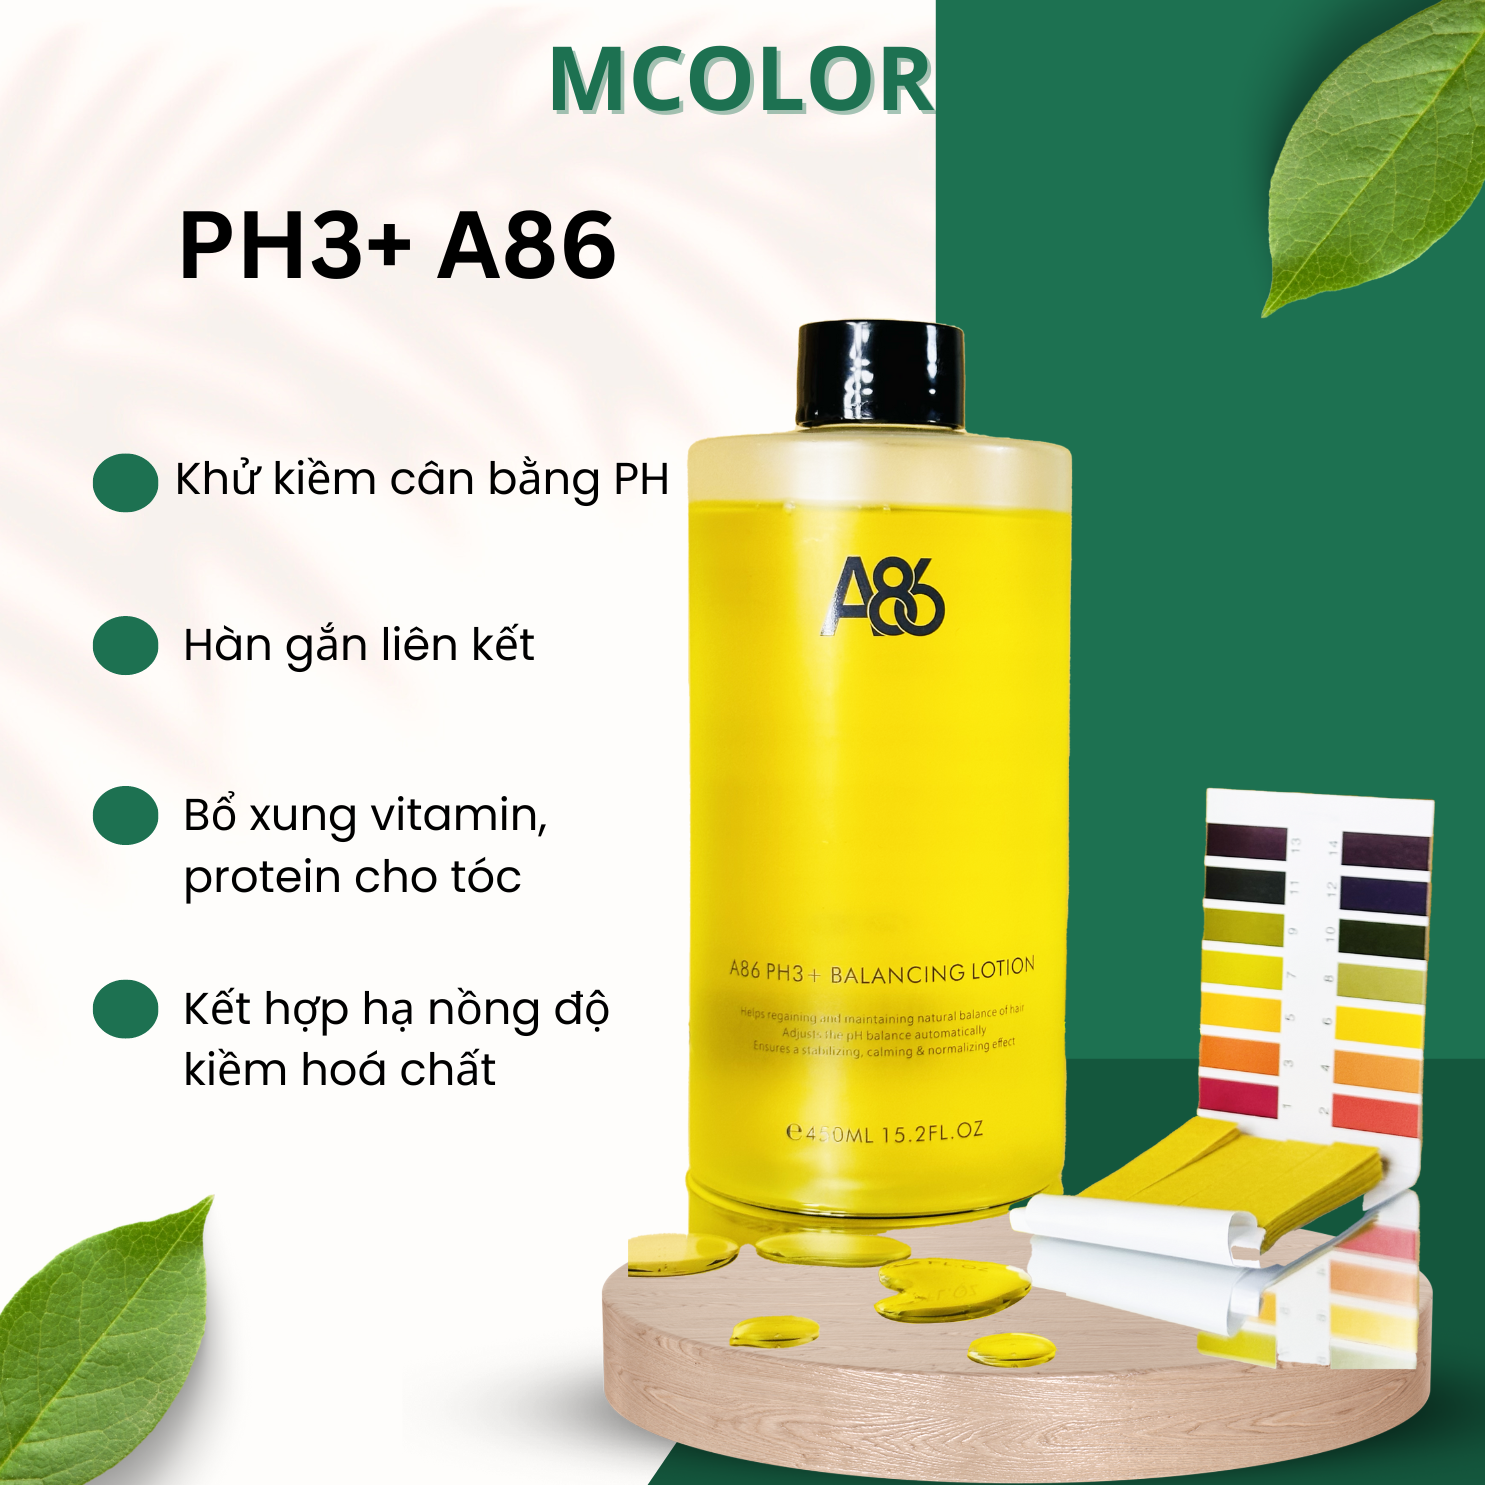 PH3+ A86 khử kiềm cân bằng PH, hàn gắn liên kết, bổ xung vitamin protein cho tóc chai 450ml